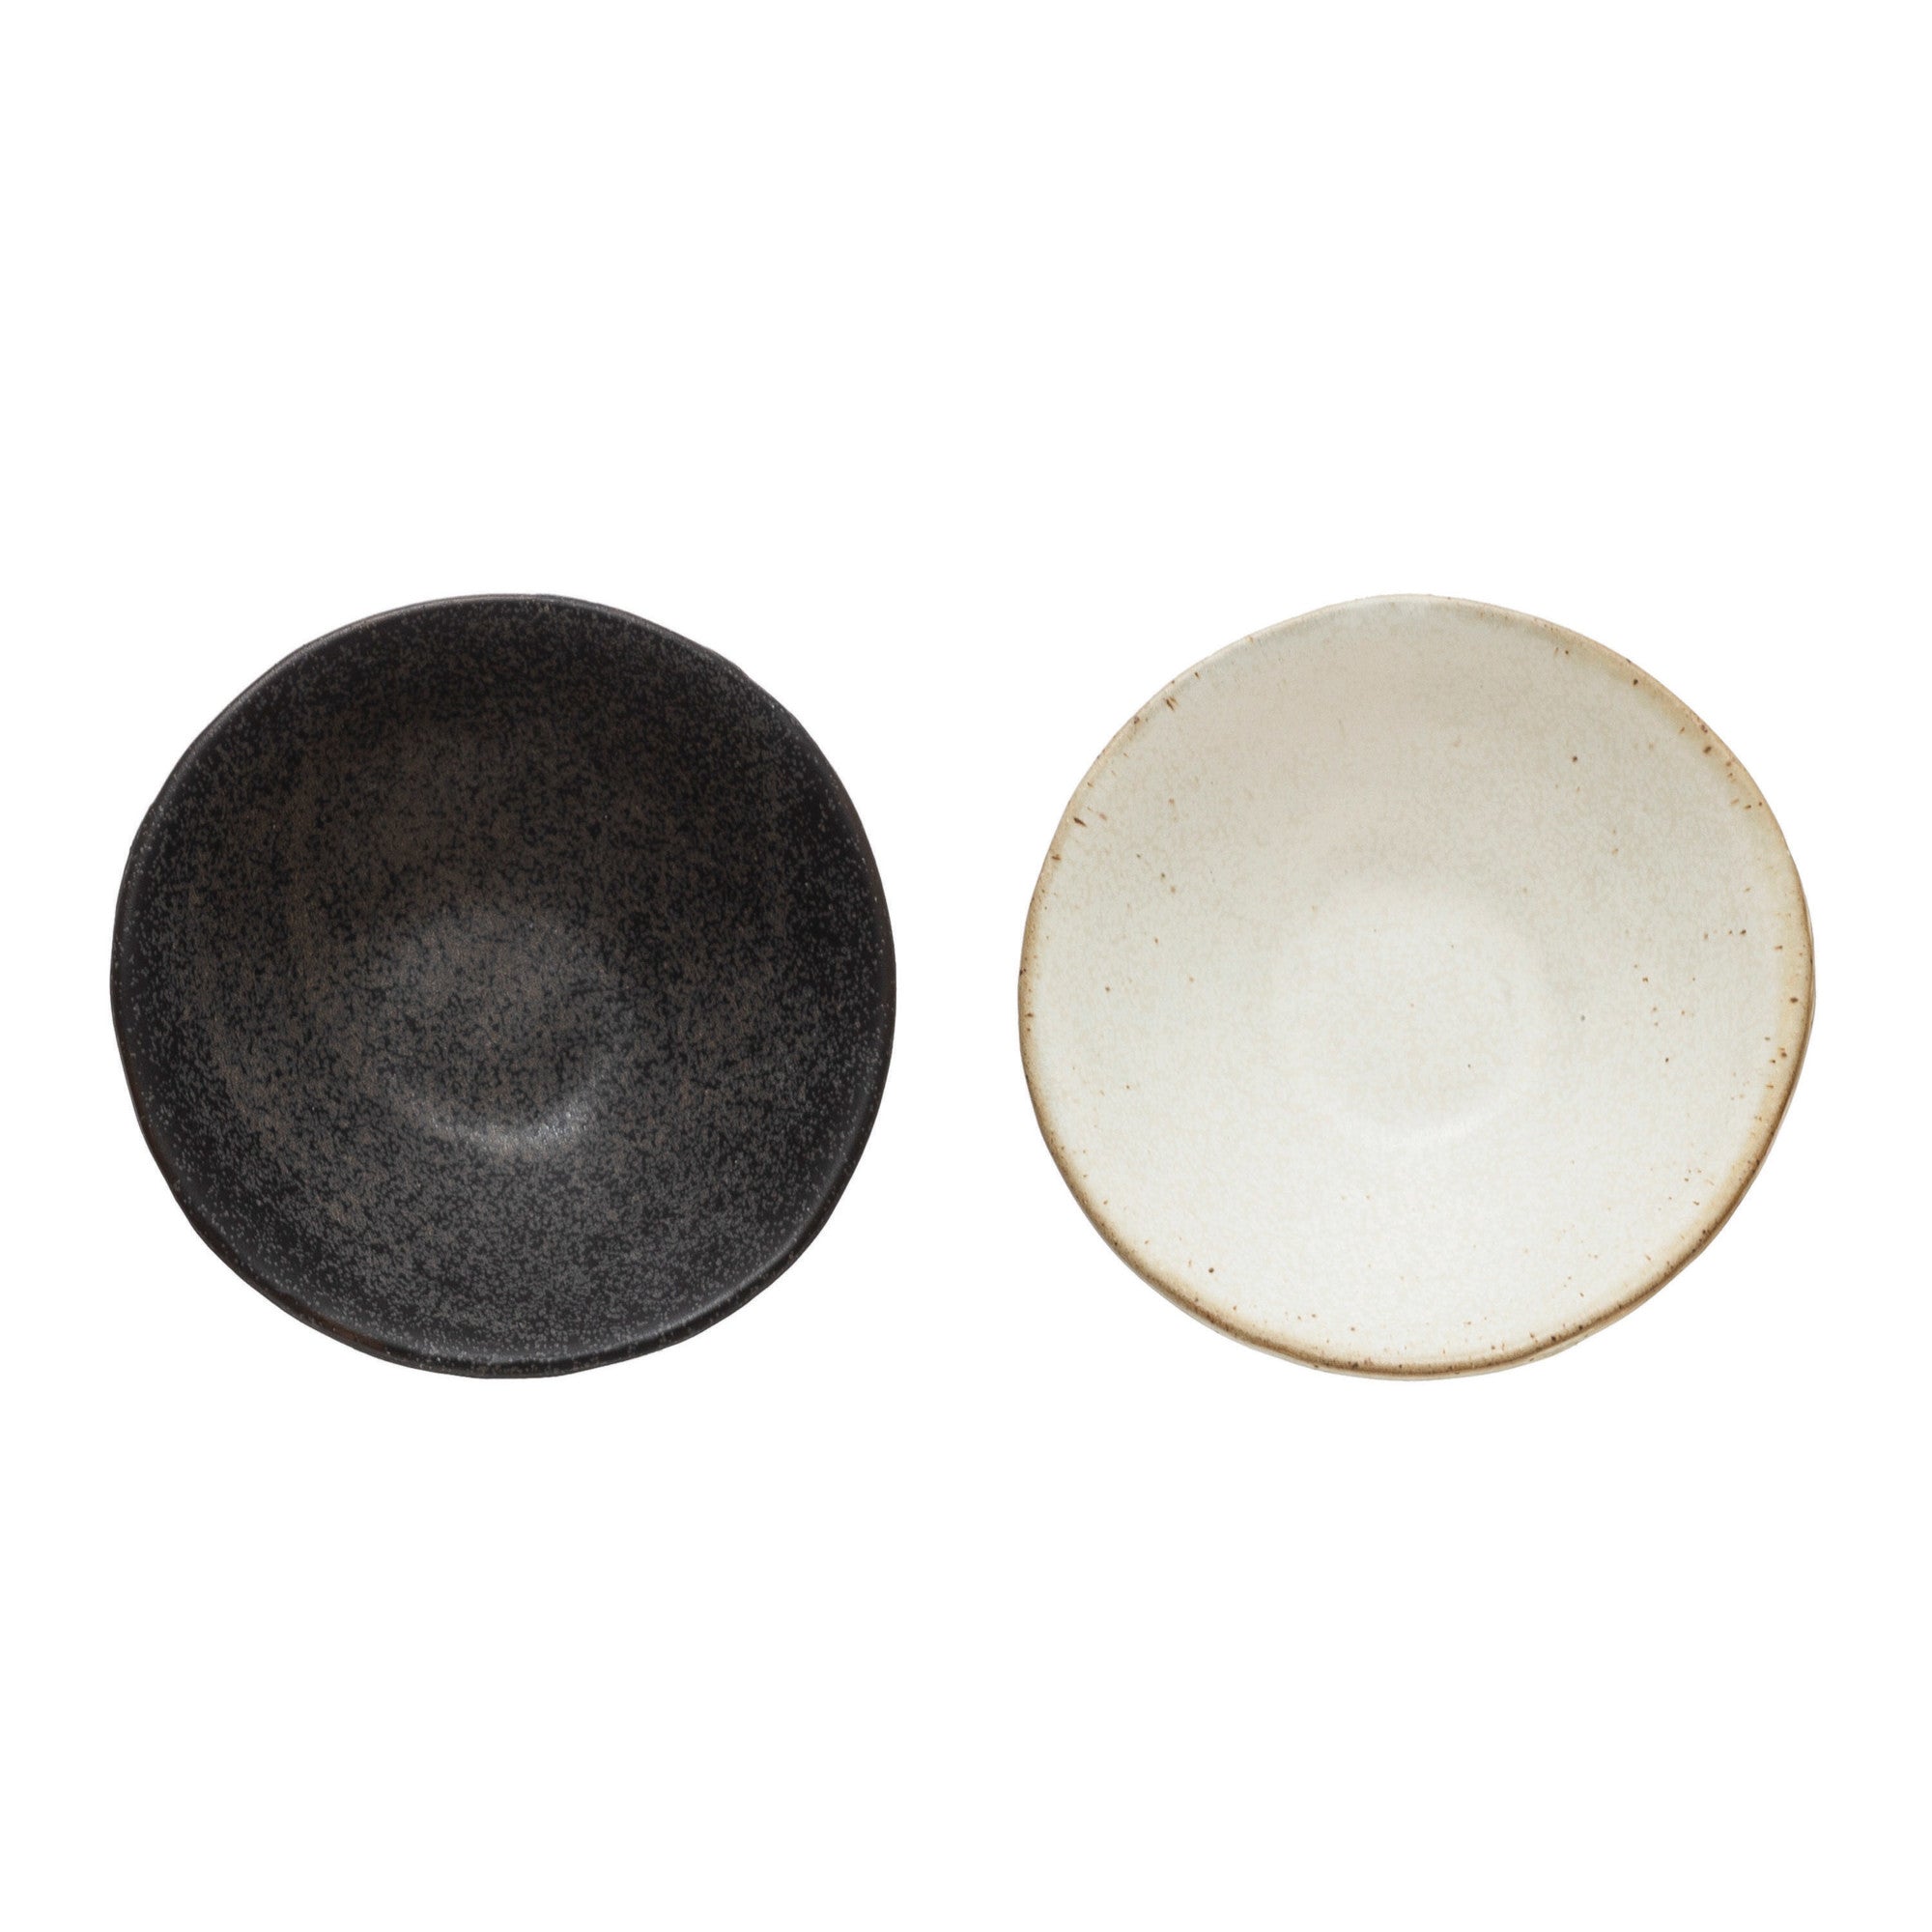 Notions Stoneware Bowl - Danshire Market and Design  Stoneware Bowl, Matte Reactive Glaze, 2 Colors